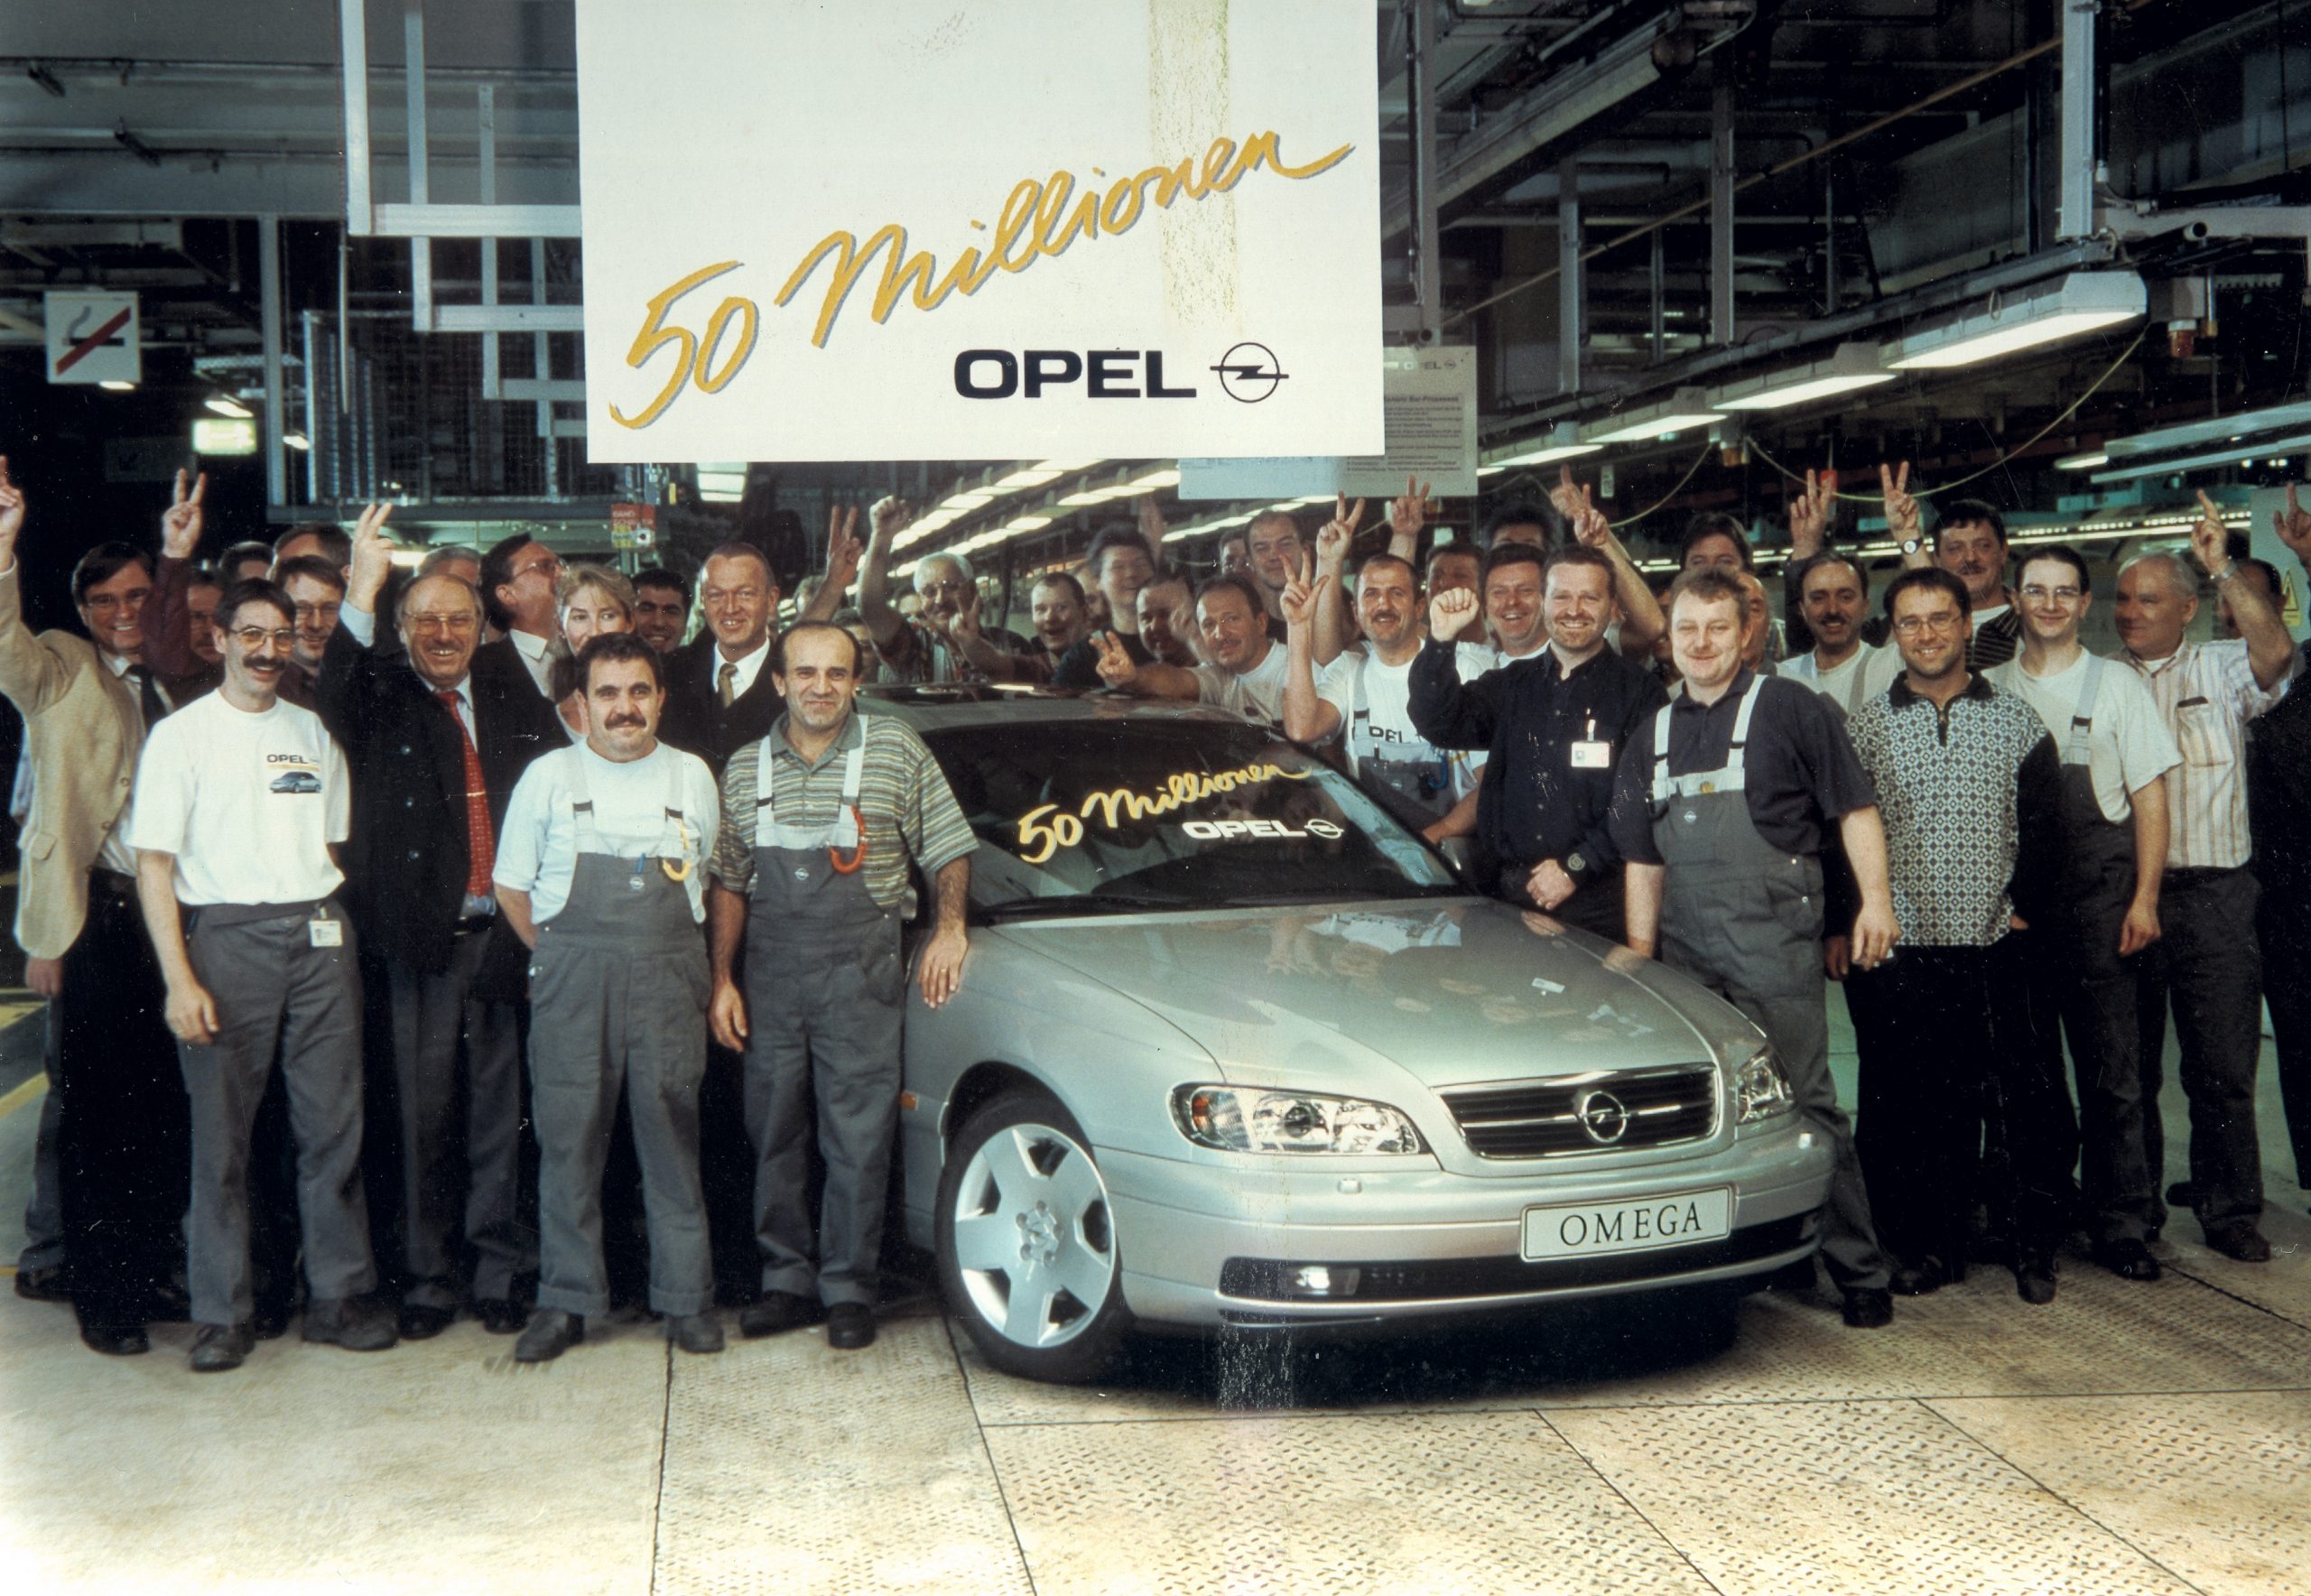 Elettrico senza vincoli con la Formula Flex & Free - image 1999-50-milioni-Opel-scaled on https://motori.net